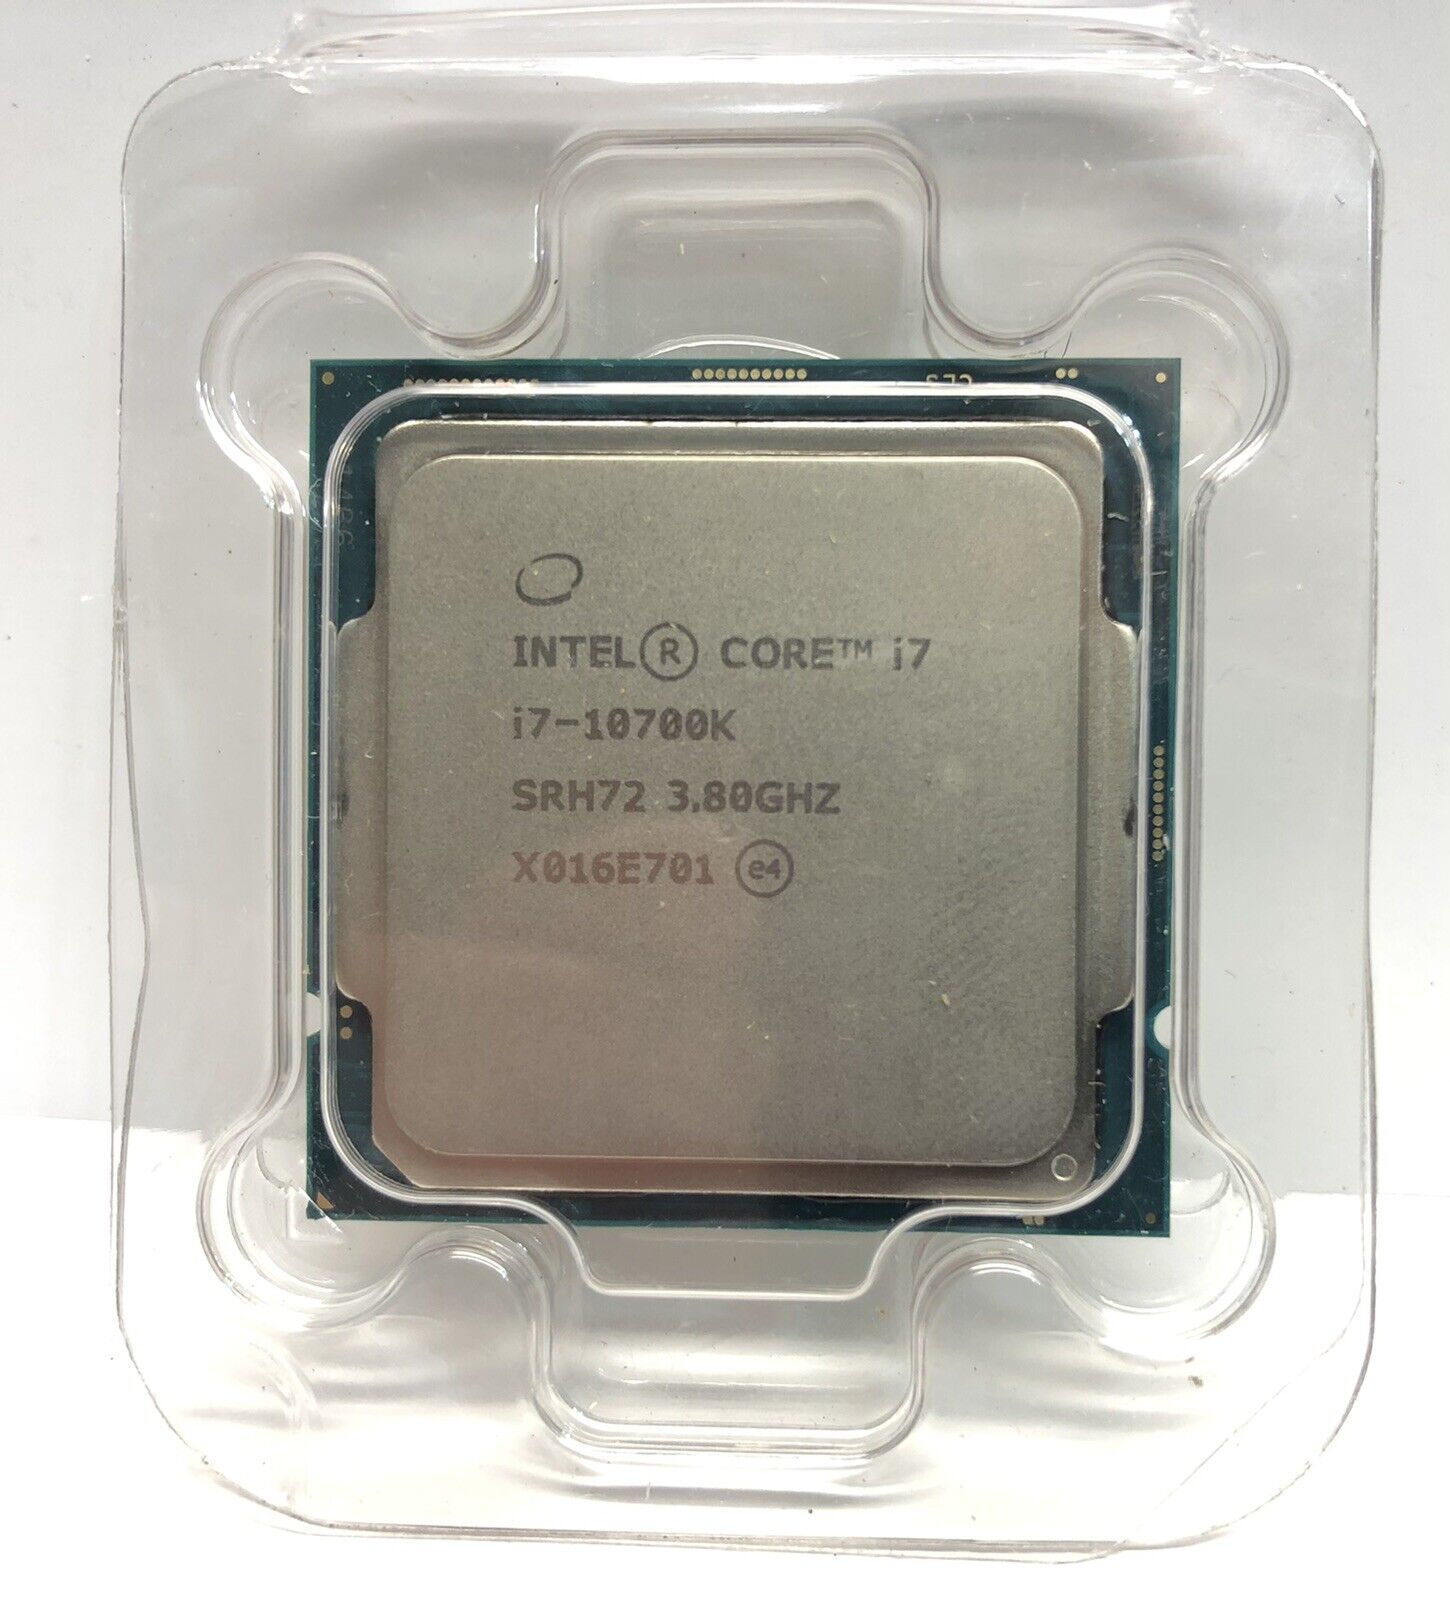 Intel Core i7-10700K Processor (5.1 GHz, 8 Cores, Socket LGA1200) - No Reserve